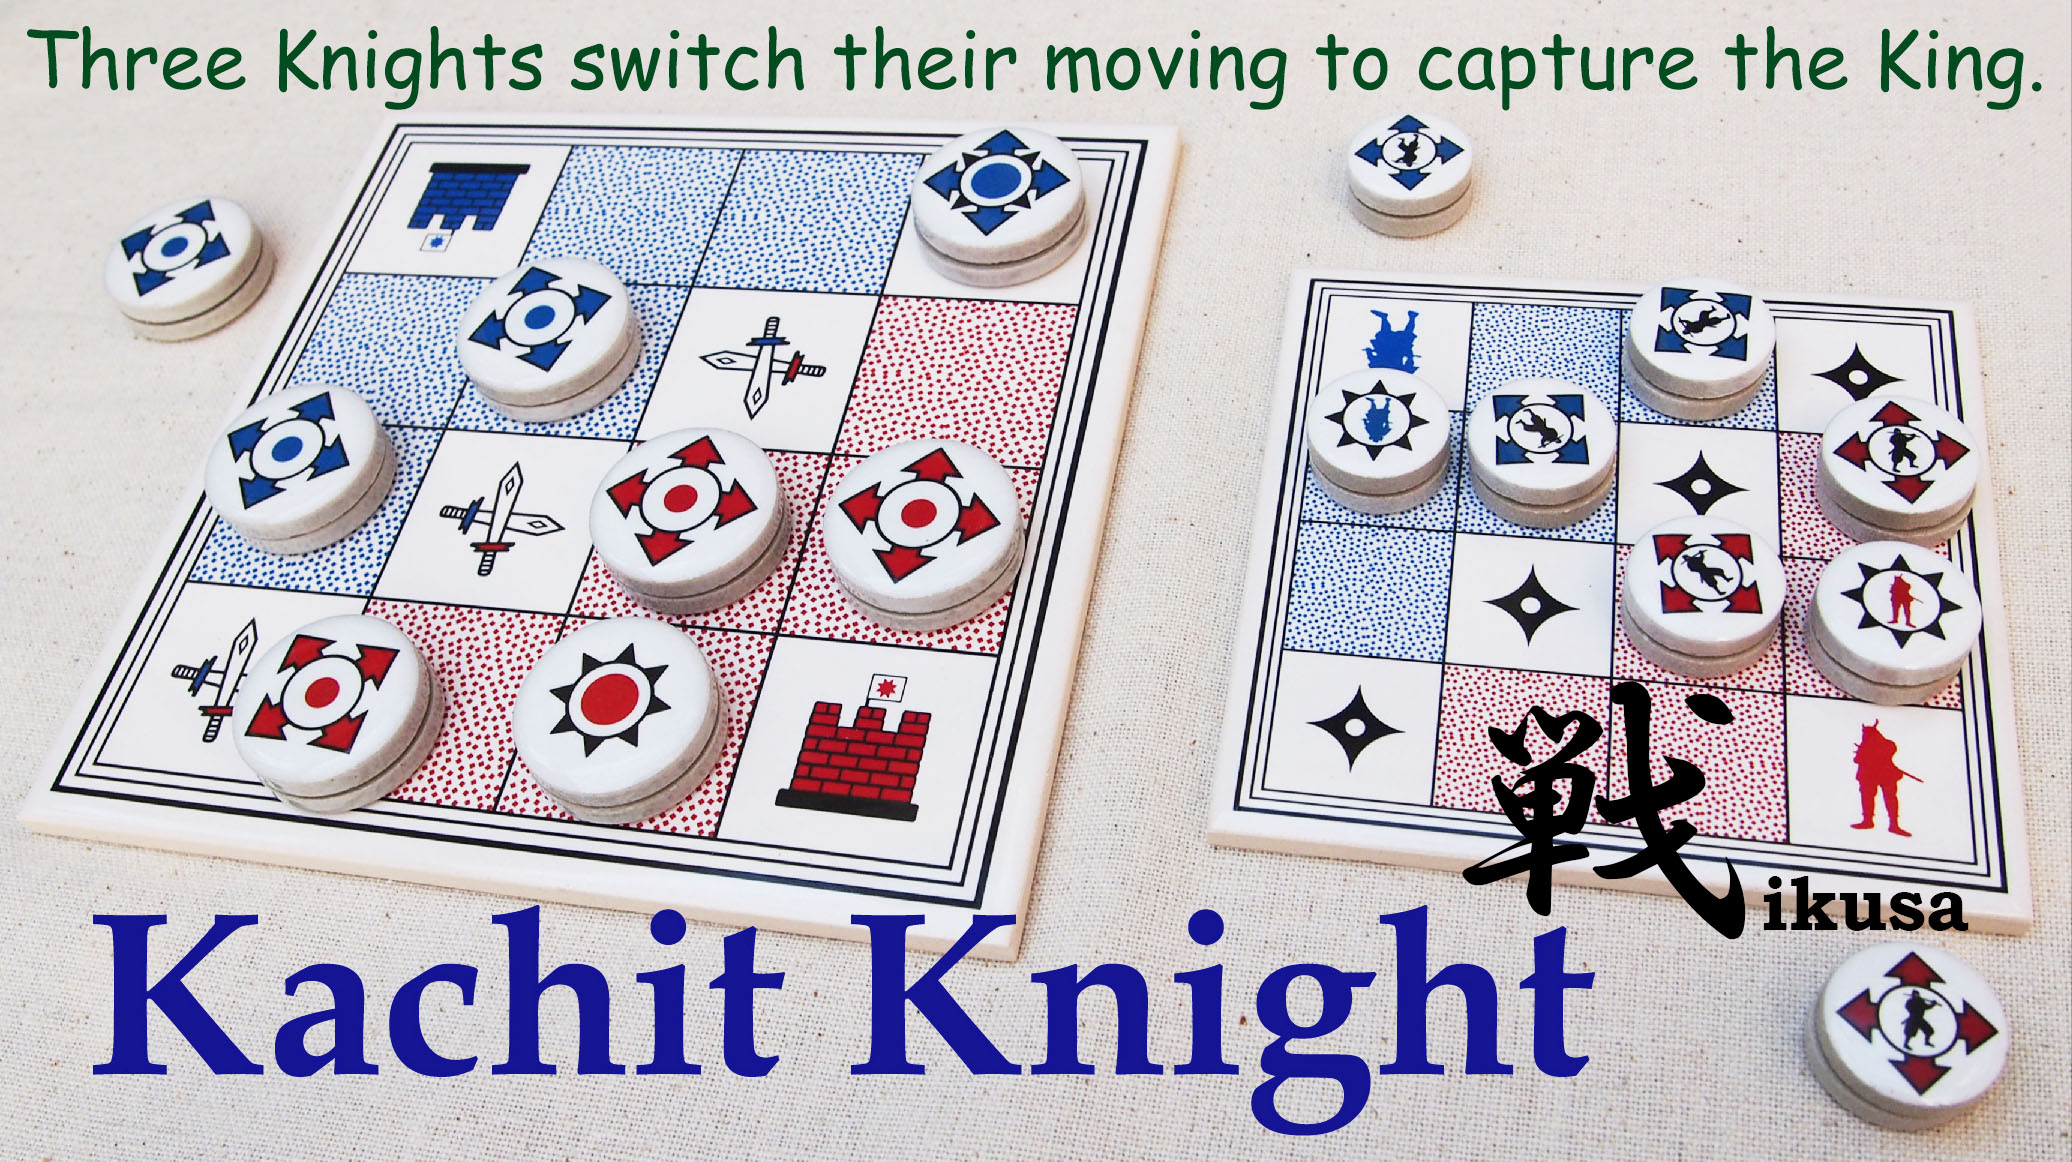 Kachit Knight